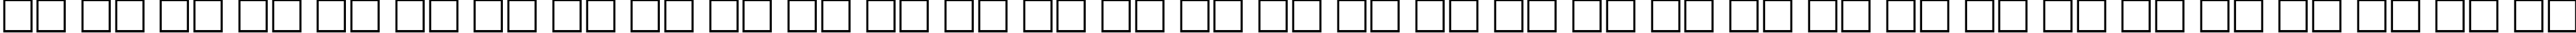 Пример написания русского алфавита шрифтом University Oblique